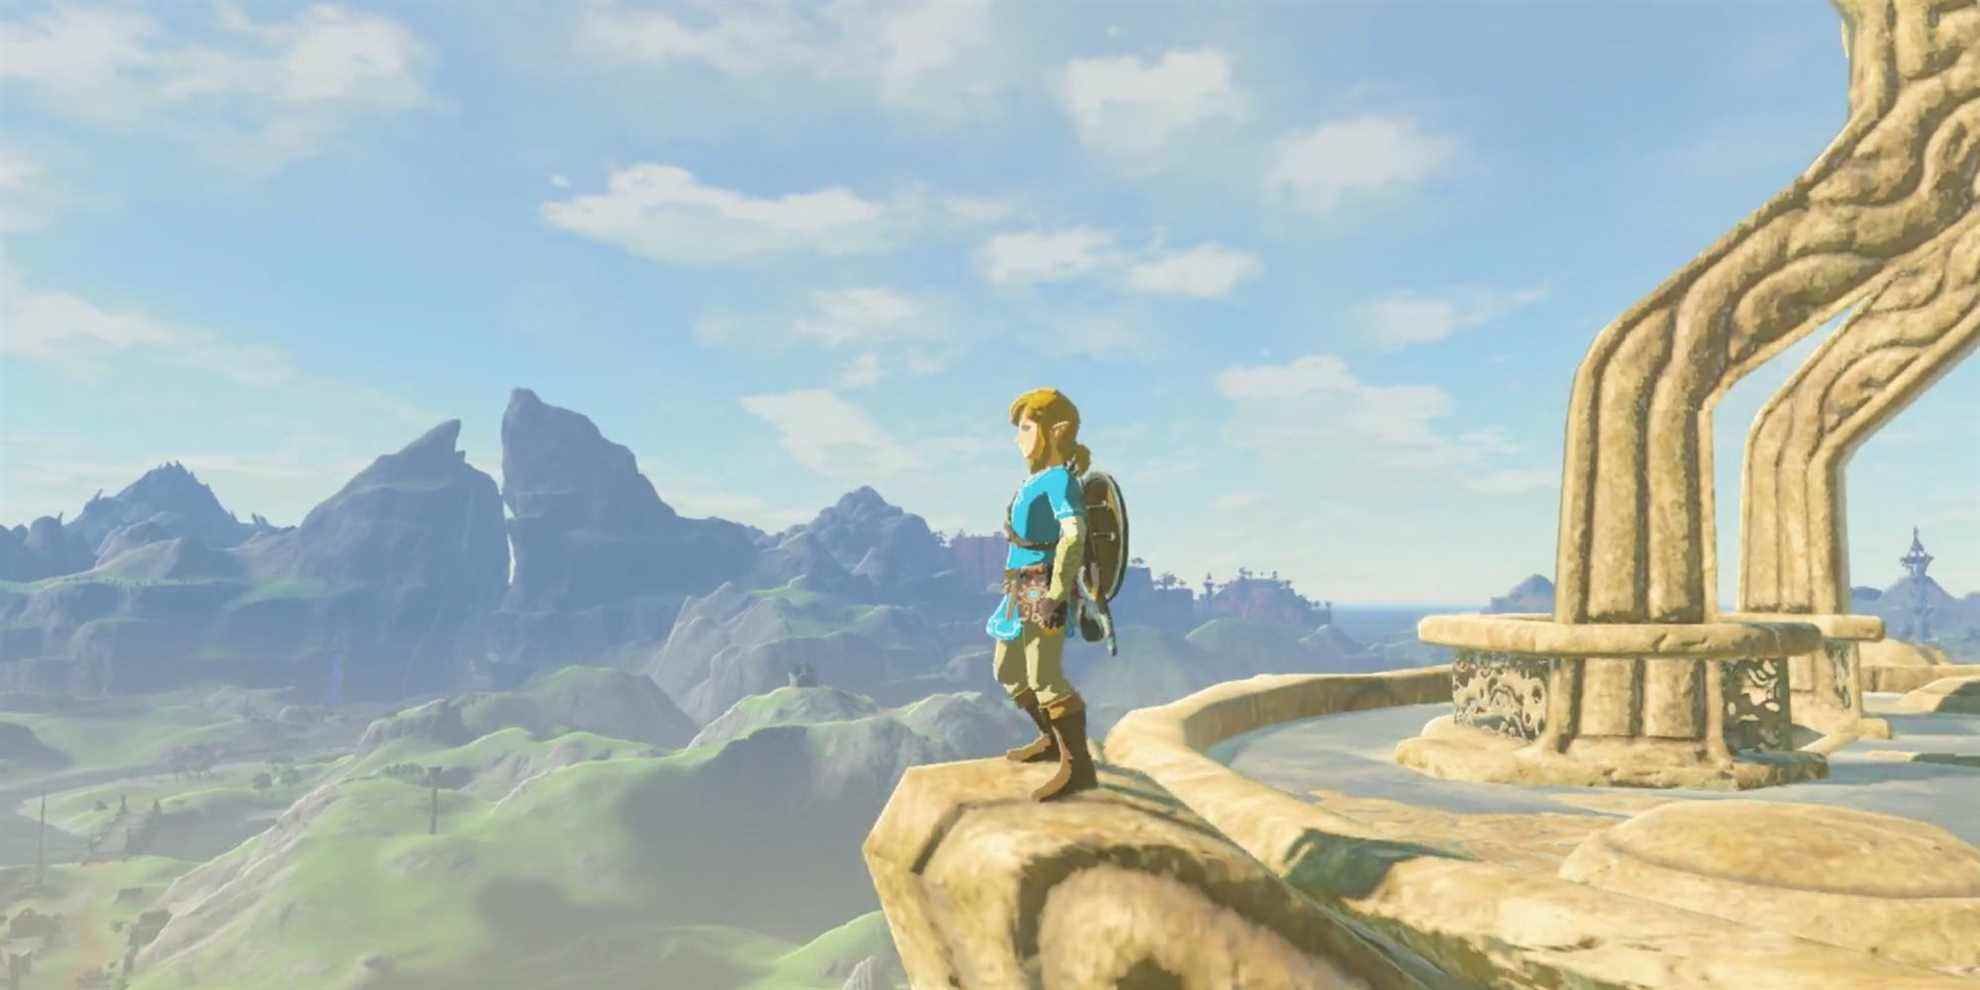 Meilleures années dans le jeu - 2017 - The Legend of Zelda - Breath of the Wild - Link attend avec impatience l'aventure